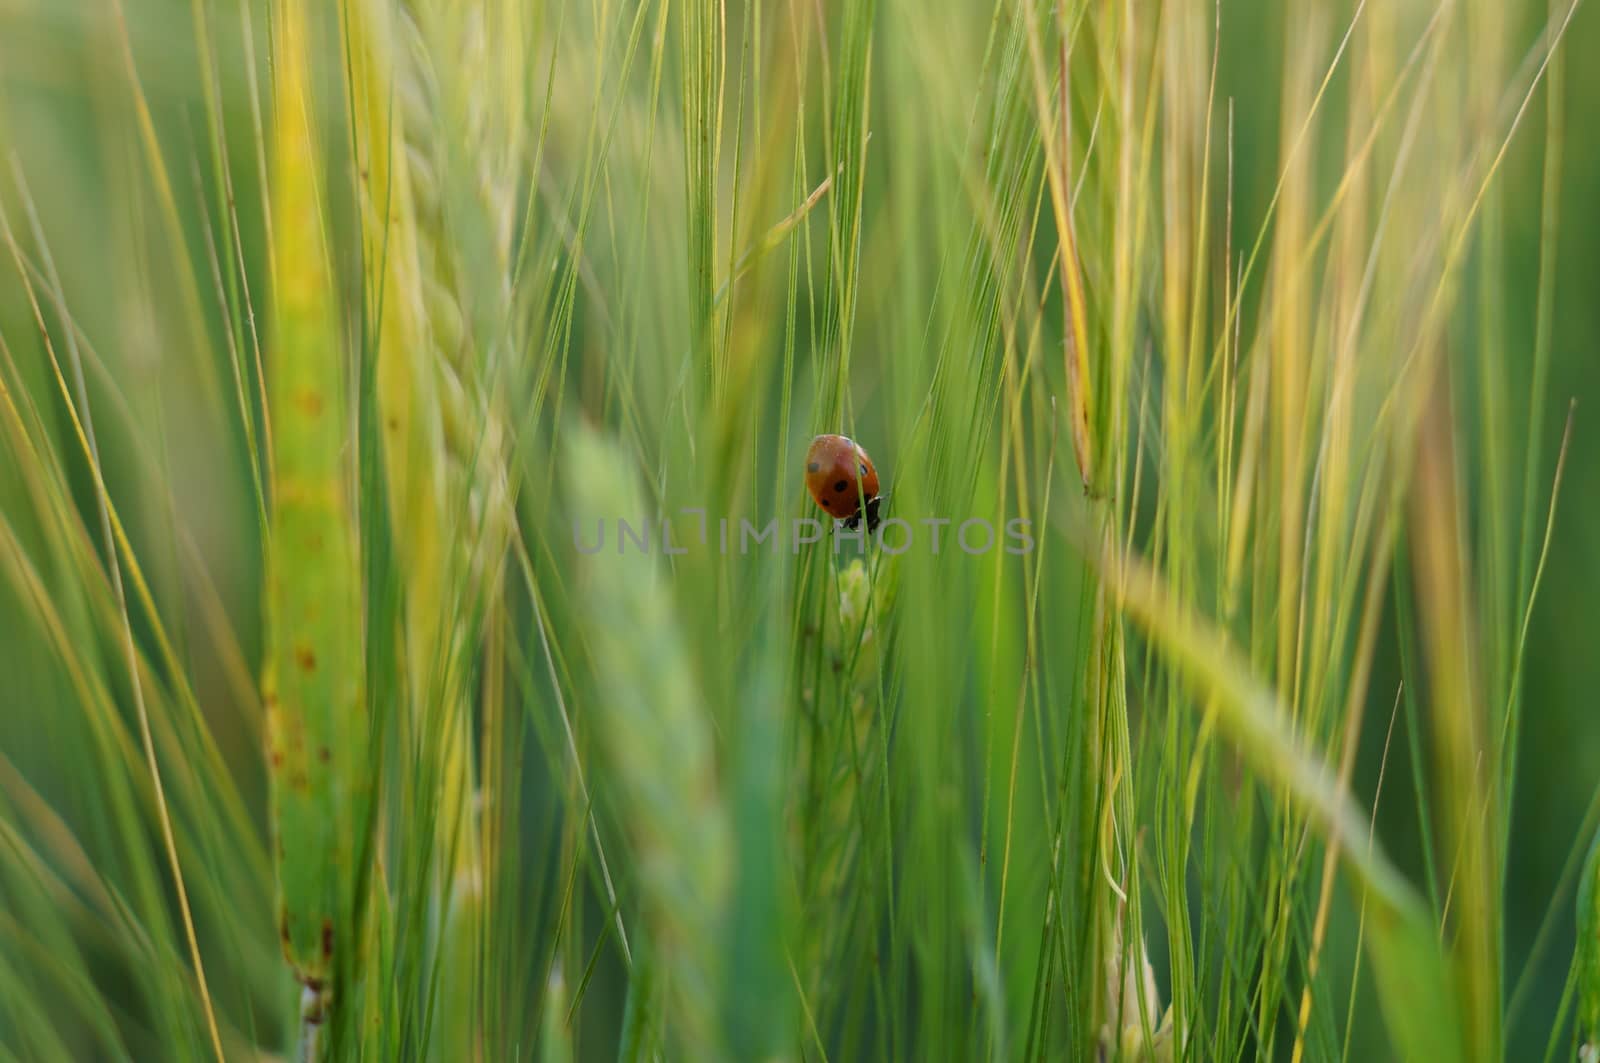 Ladybird on green grass by celaler